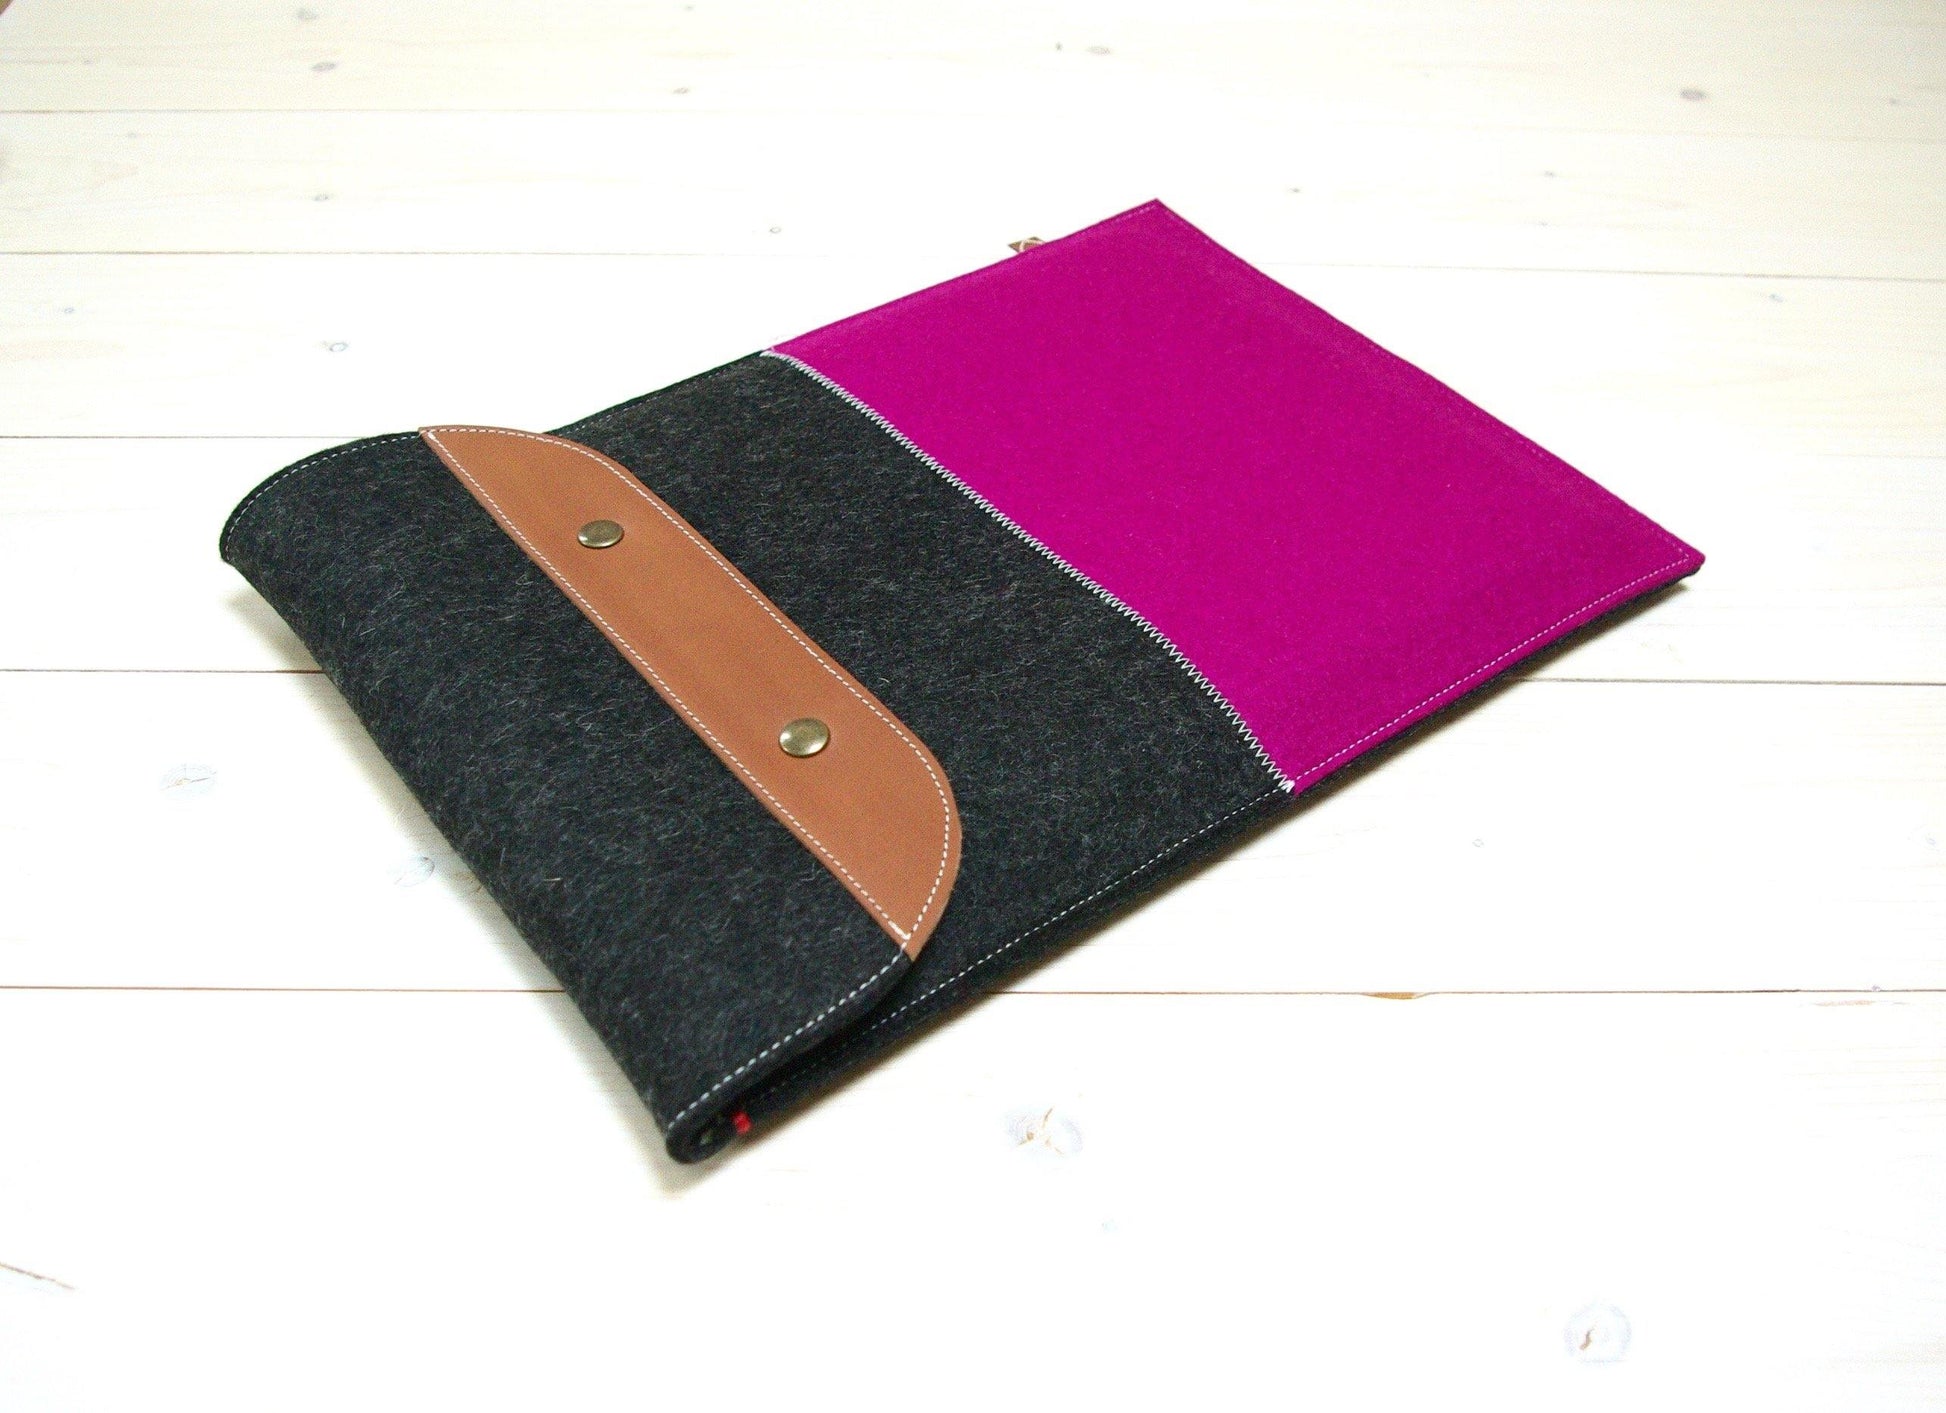 CONTRAST classic case - Macbook hoes met klepsluiting in Dark Pink. 13" | 15" - Westerman Bags vilten tassen en hoezen. Dutch Design.